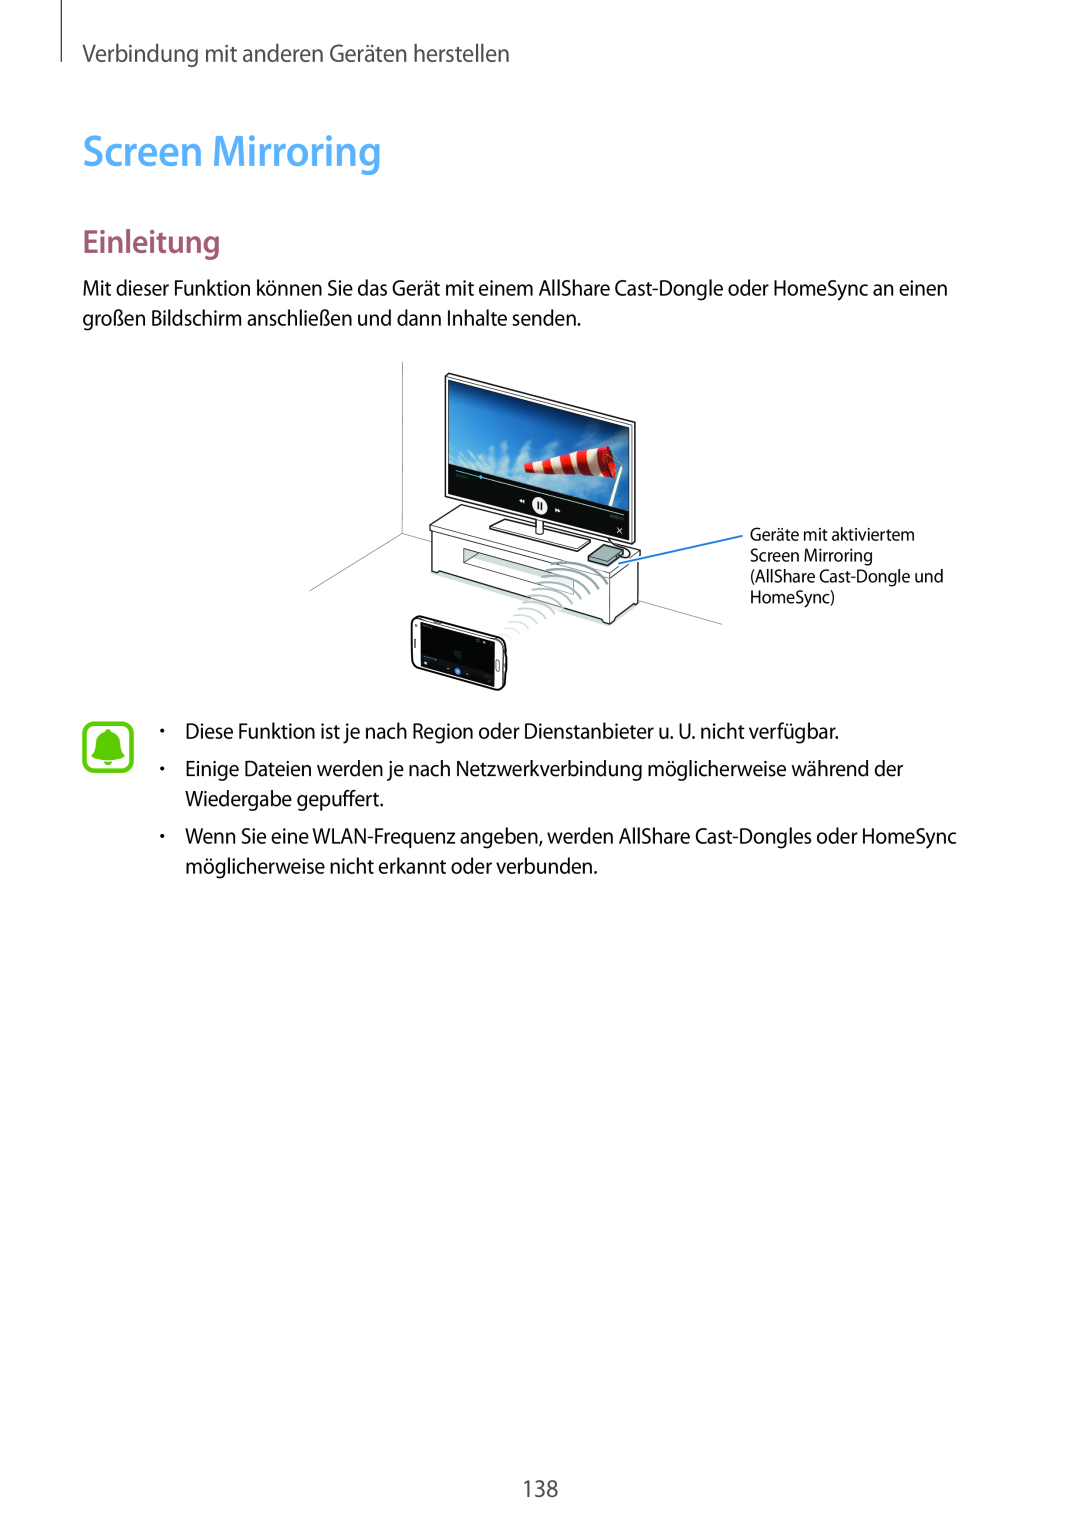 Samsung SM-N910FZWEEUR, SM-N910FZWEDRE manual Screen Mirroring, Einleitung, Verbindung mit anderen Geräten herstellen 